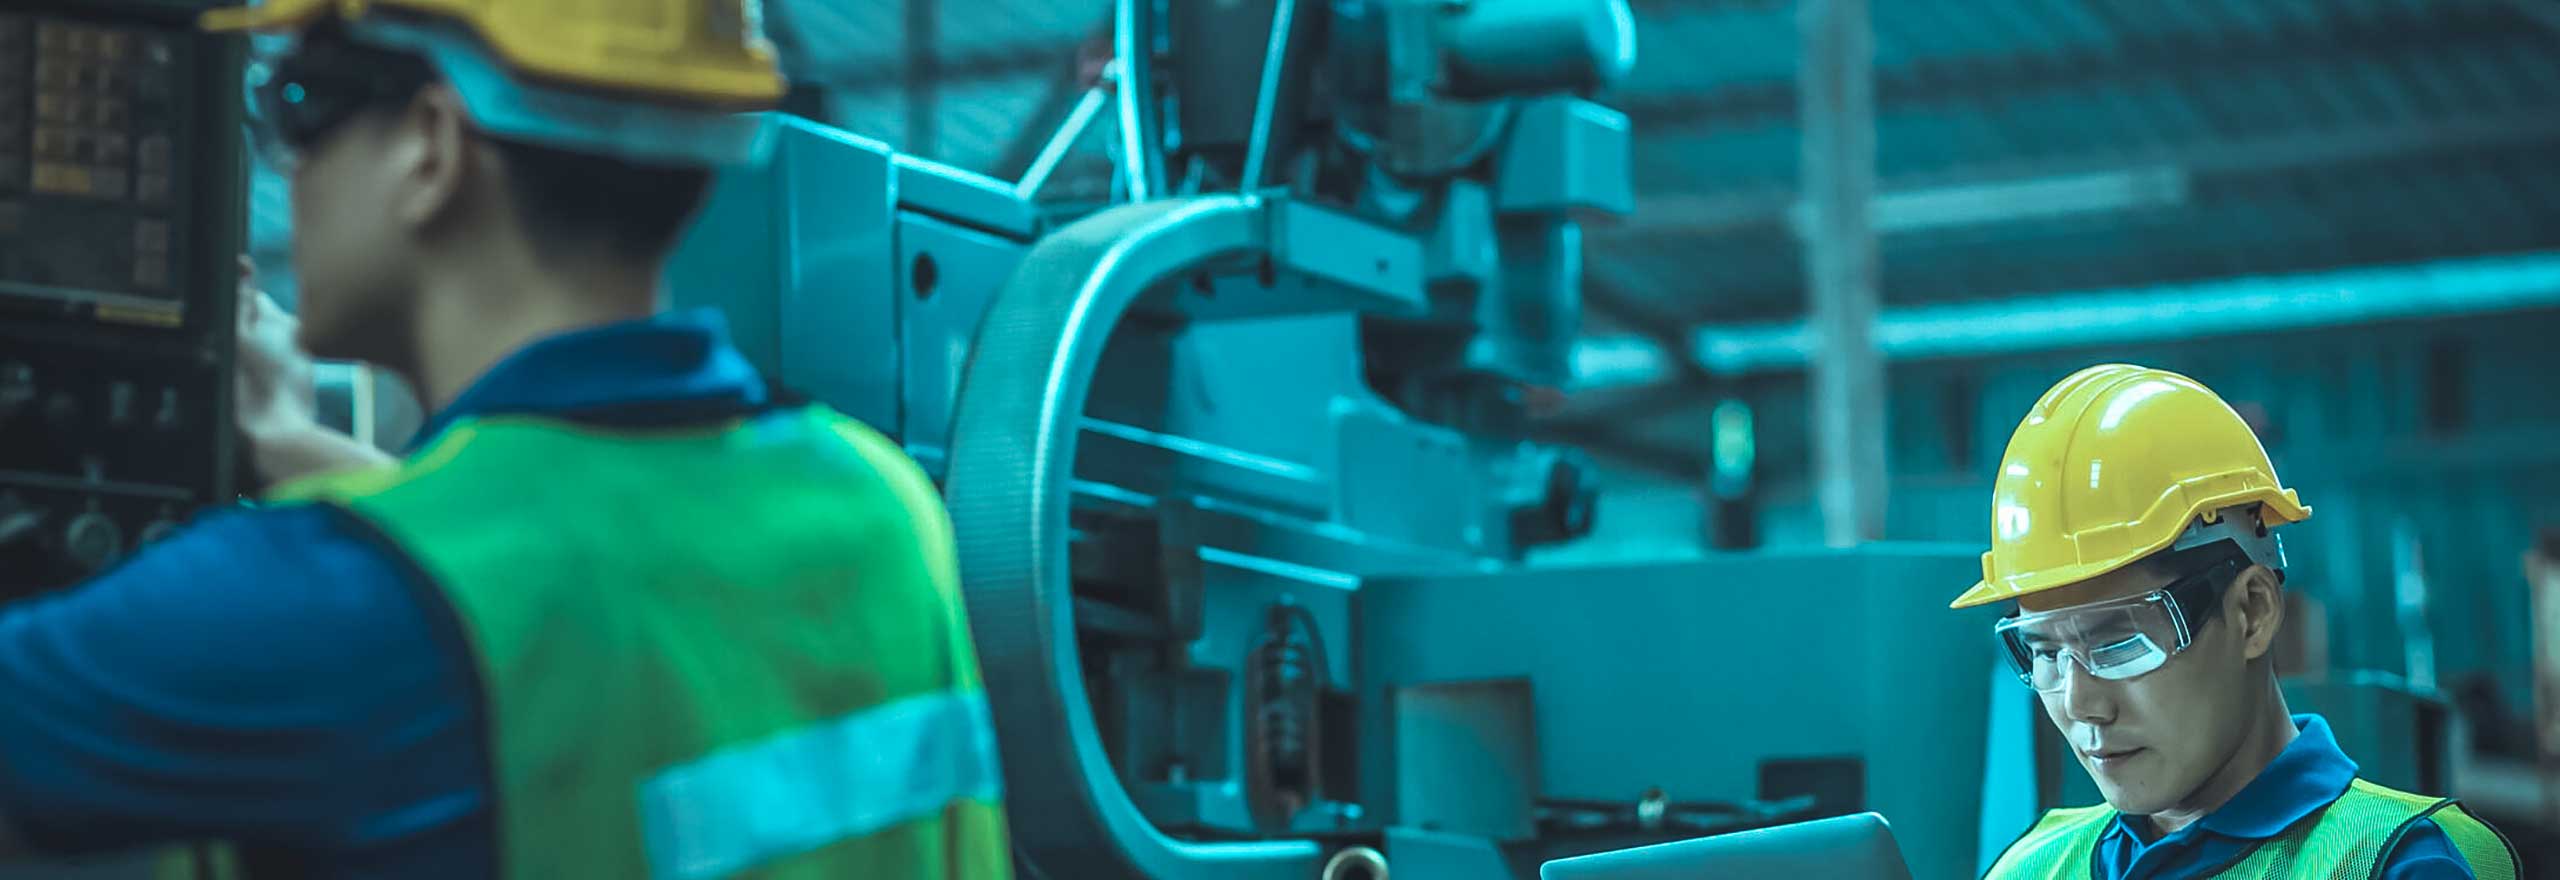 Engenheiro com capacete e um tablet analisando dados enquanto seu colega analisa a máquina em uma instalação industrial.